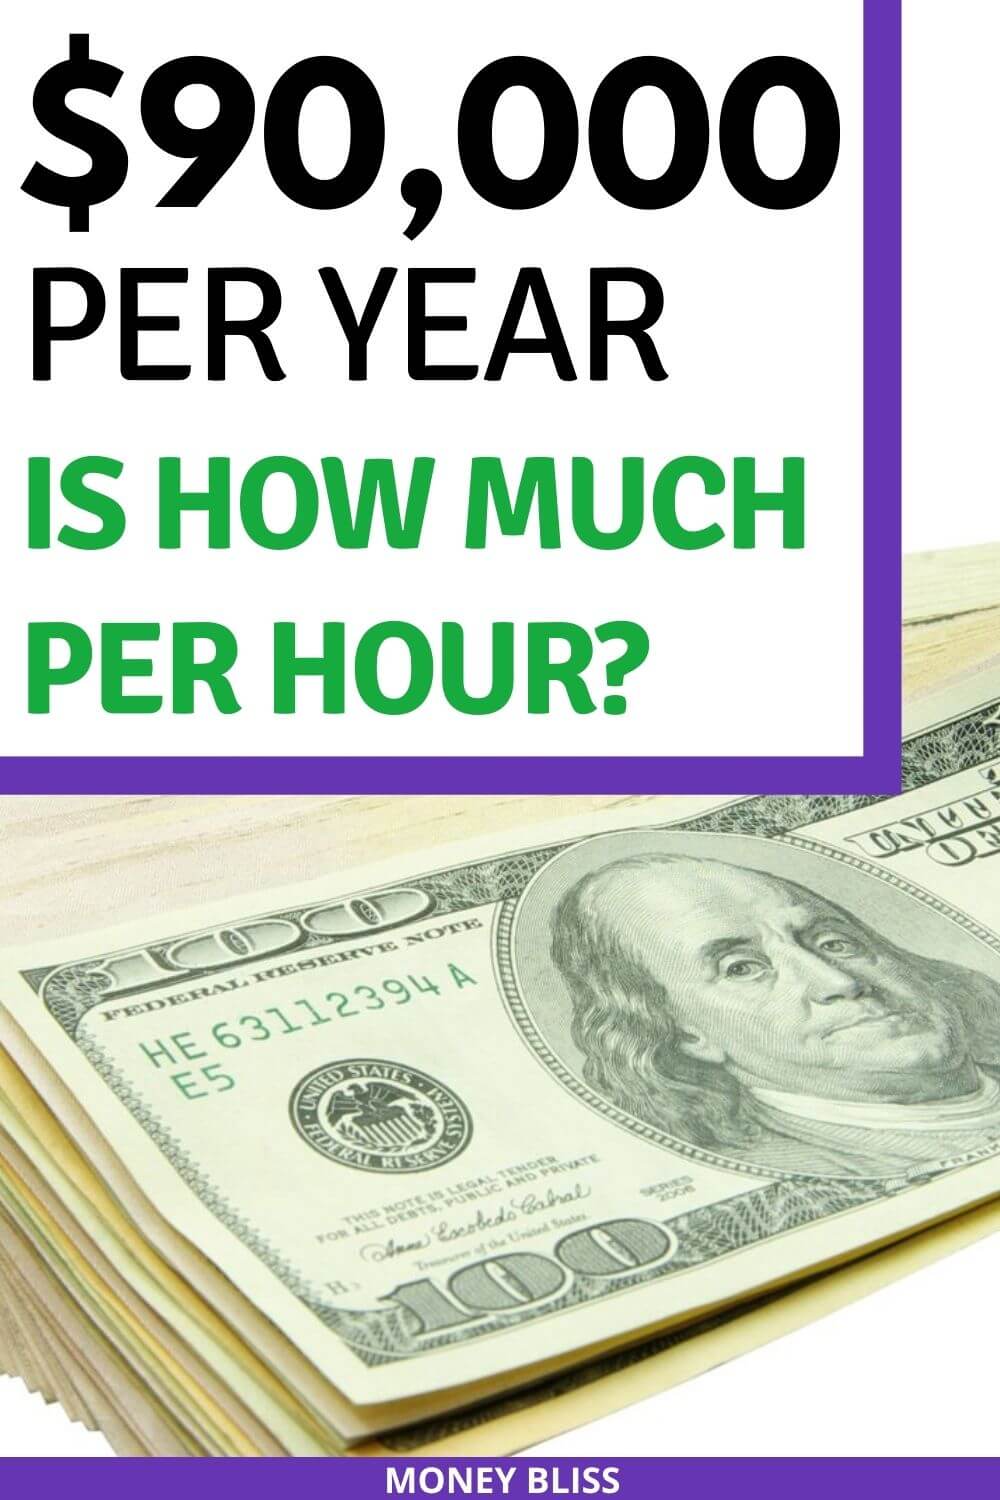 ¿Cuánto cuesta una hora a 90.000 dólares al año? ¿Buena paga?